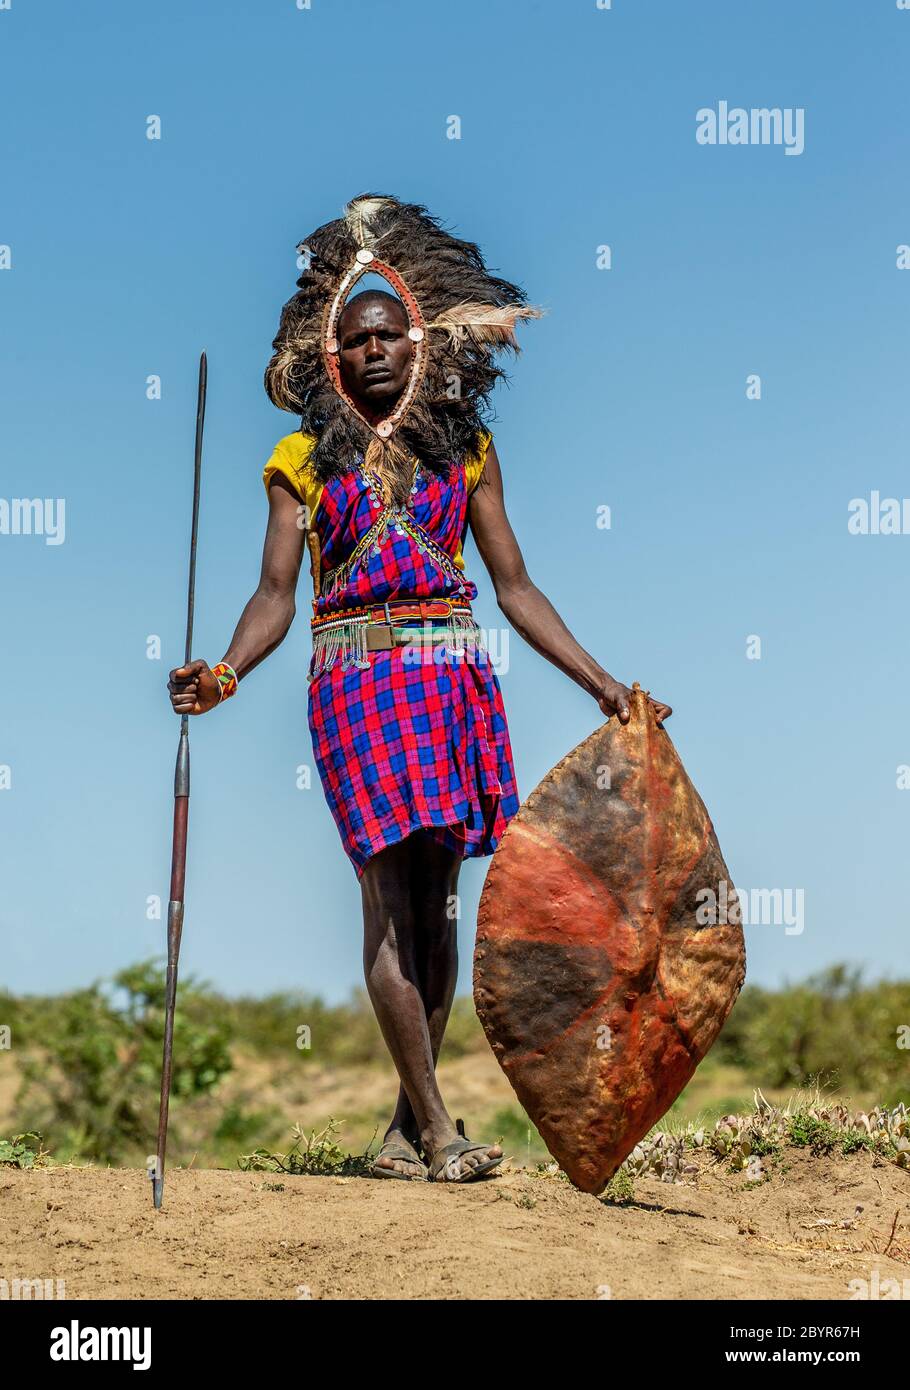 Tribus africanas fotografías e imágenes de alta resolución - Página 5 -  Alamy